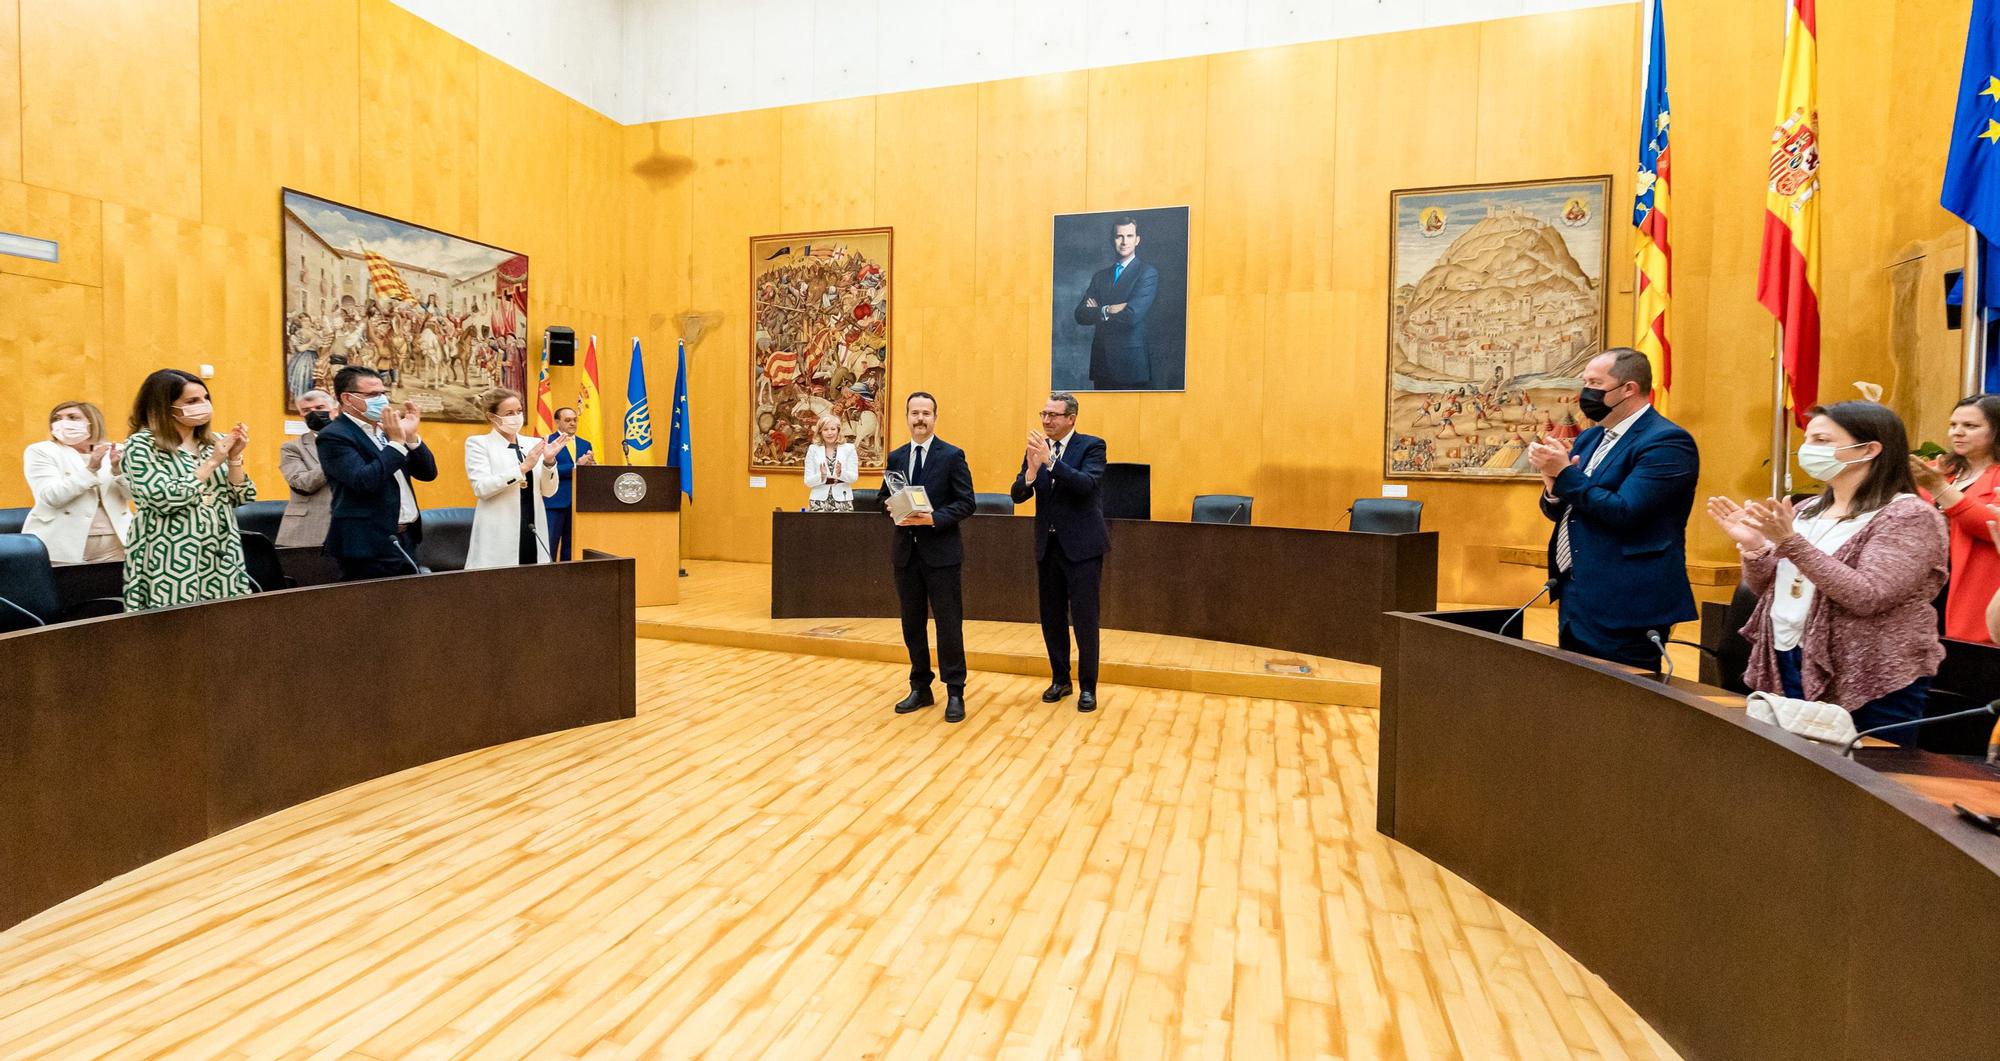 El Ayuntamiento otorga este reconocimiento a los ciudadanos de ese país para reconocer la valentía y capacidad de resistencia frente a los invasores rusos